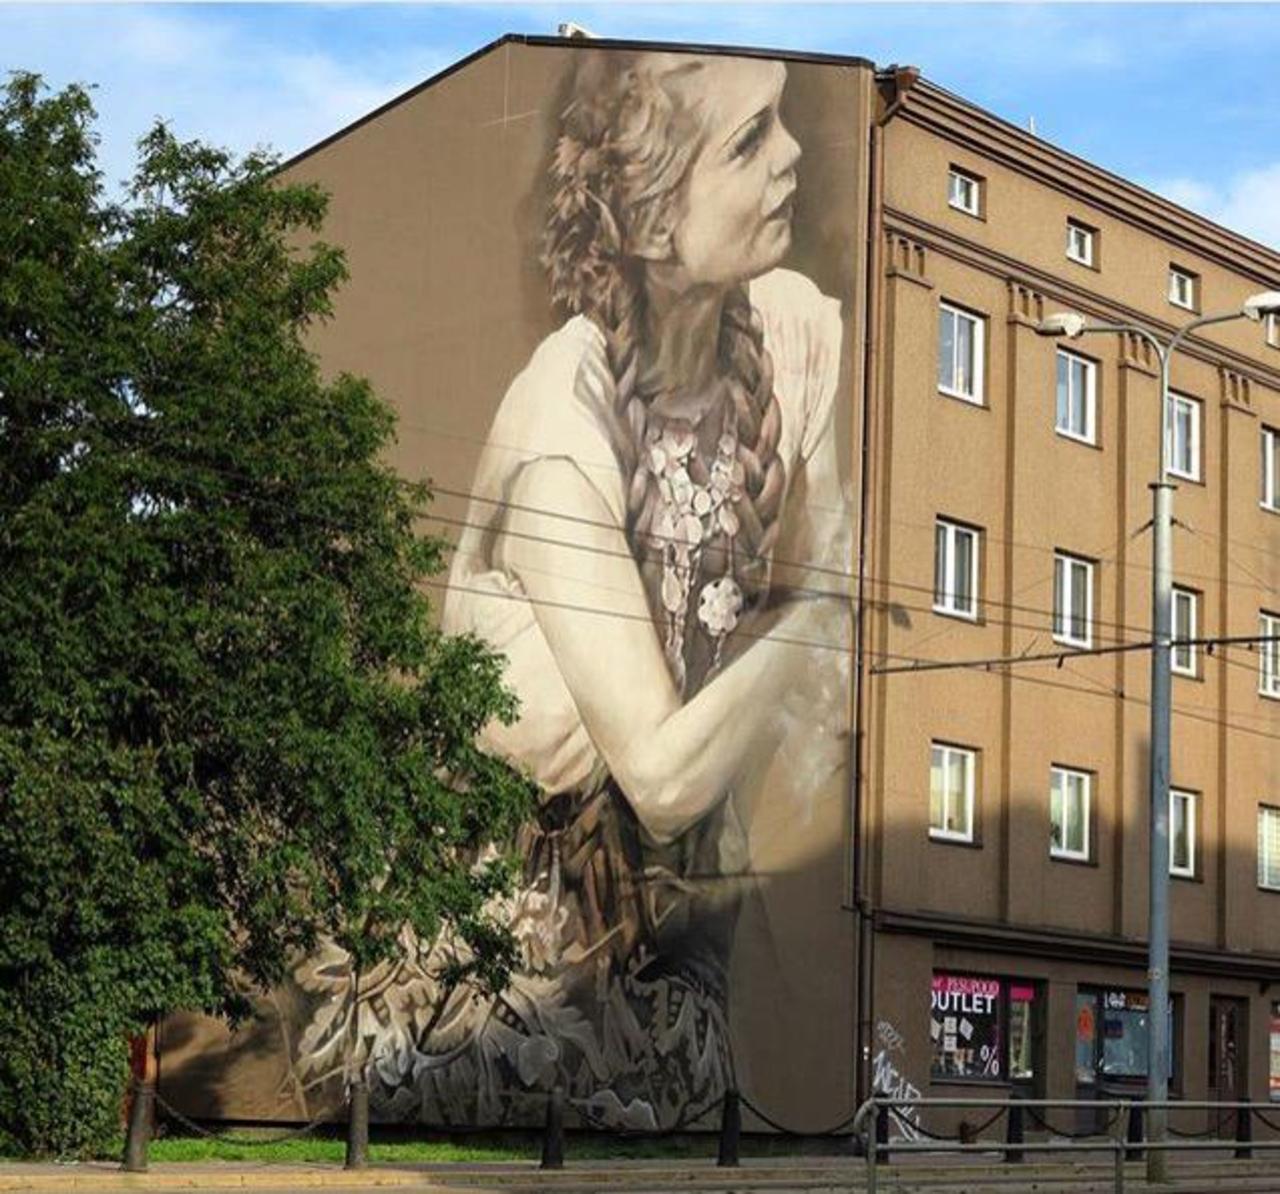 Just completed Street Art from Guido Van Helten in Tallinn, Estonia 

#art #mural #graffiti #streetart http://t.co/wZ2lrANZXi